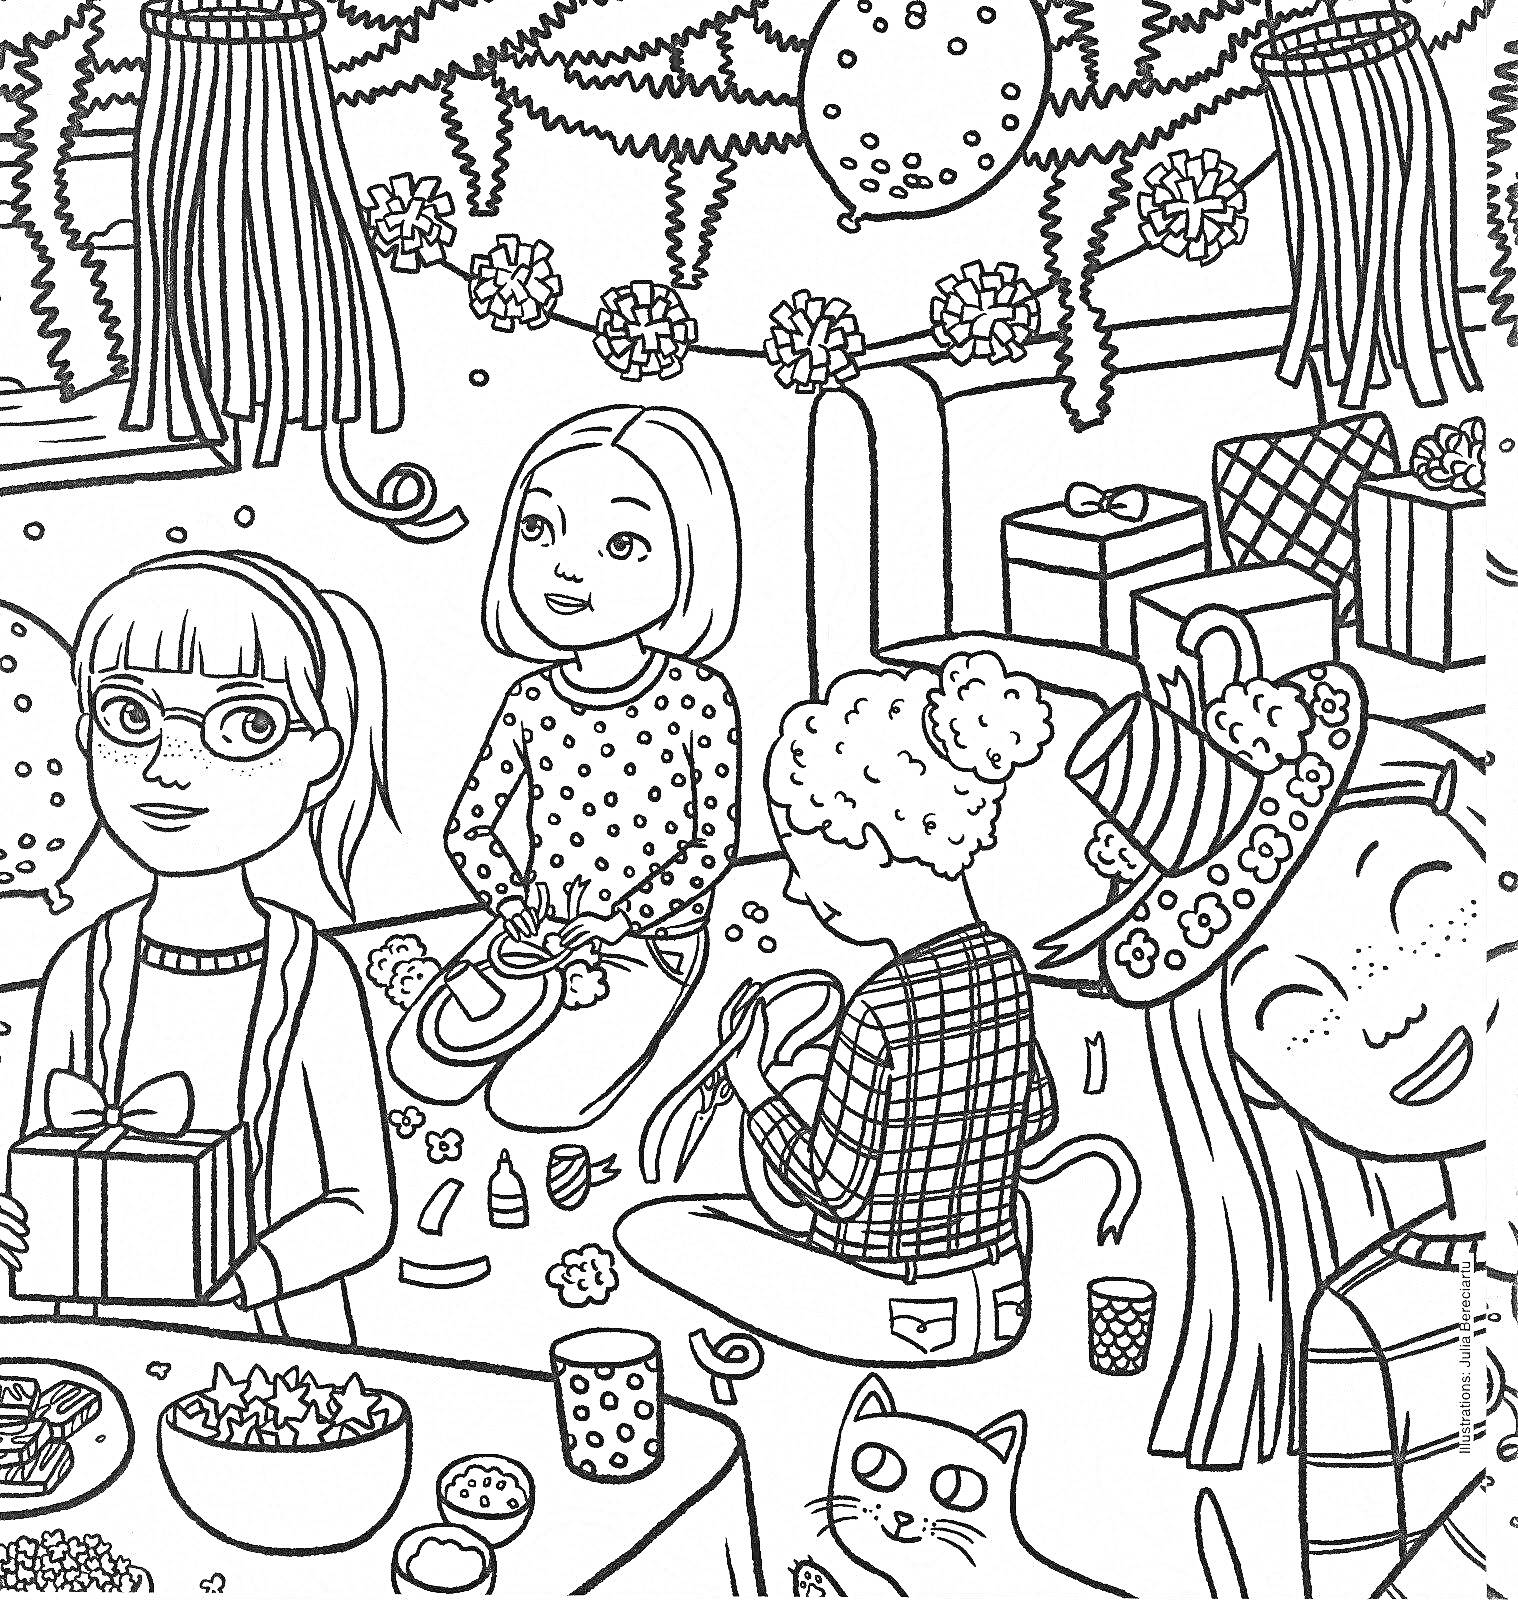 Вечеринка с подарками, гирляндами и украшениями. Девочки сидят и распаковывают подарки, на столе стоит миска с попкорном и чашки, на заднем плане висят гирлянды и помпоны, справа изображен кот и украшенная шляпа.